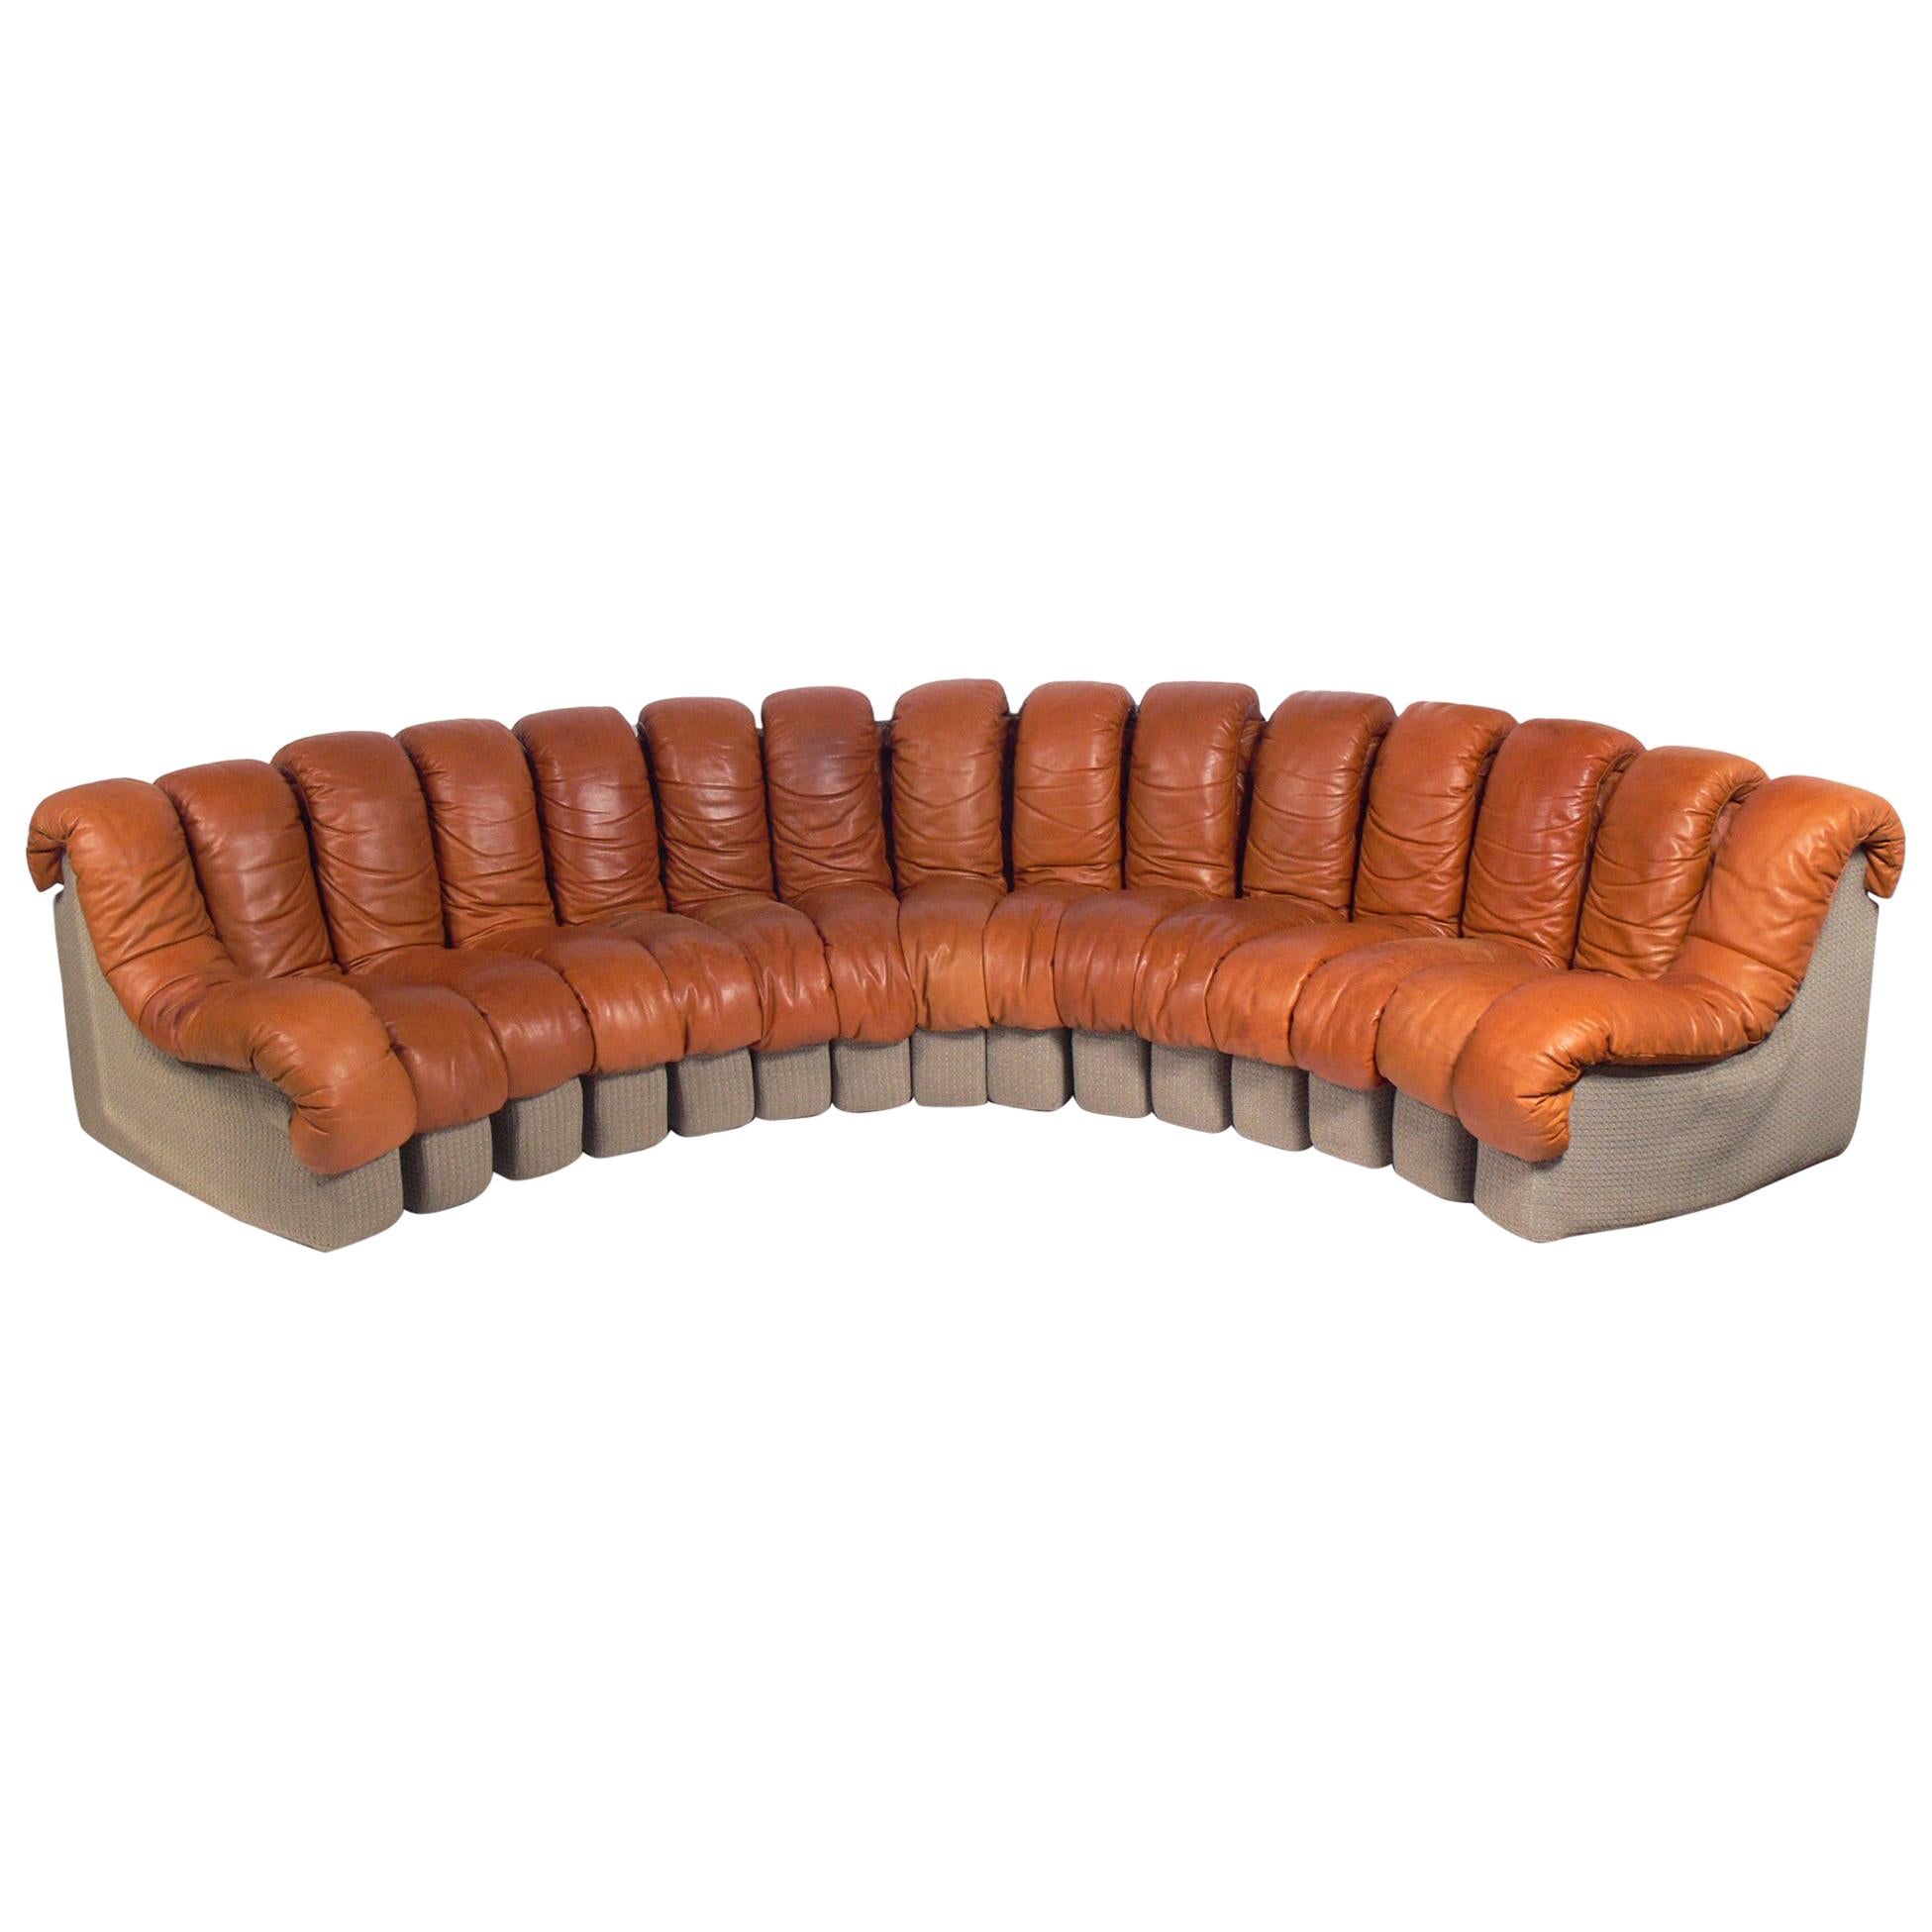 De Sede "Non-Stop" Leather Sectional Sofa